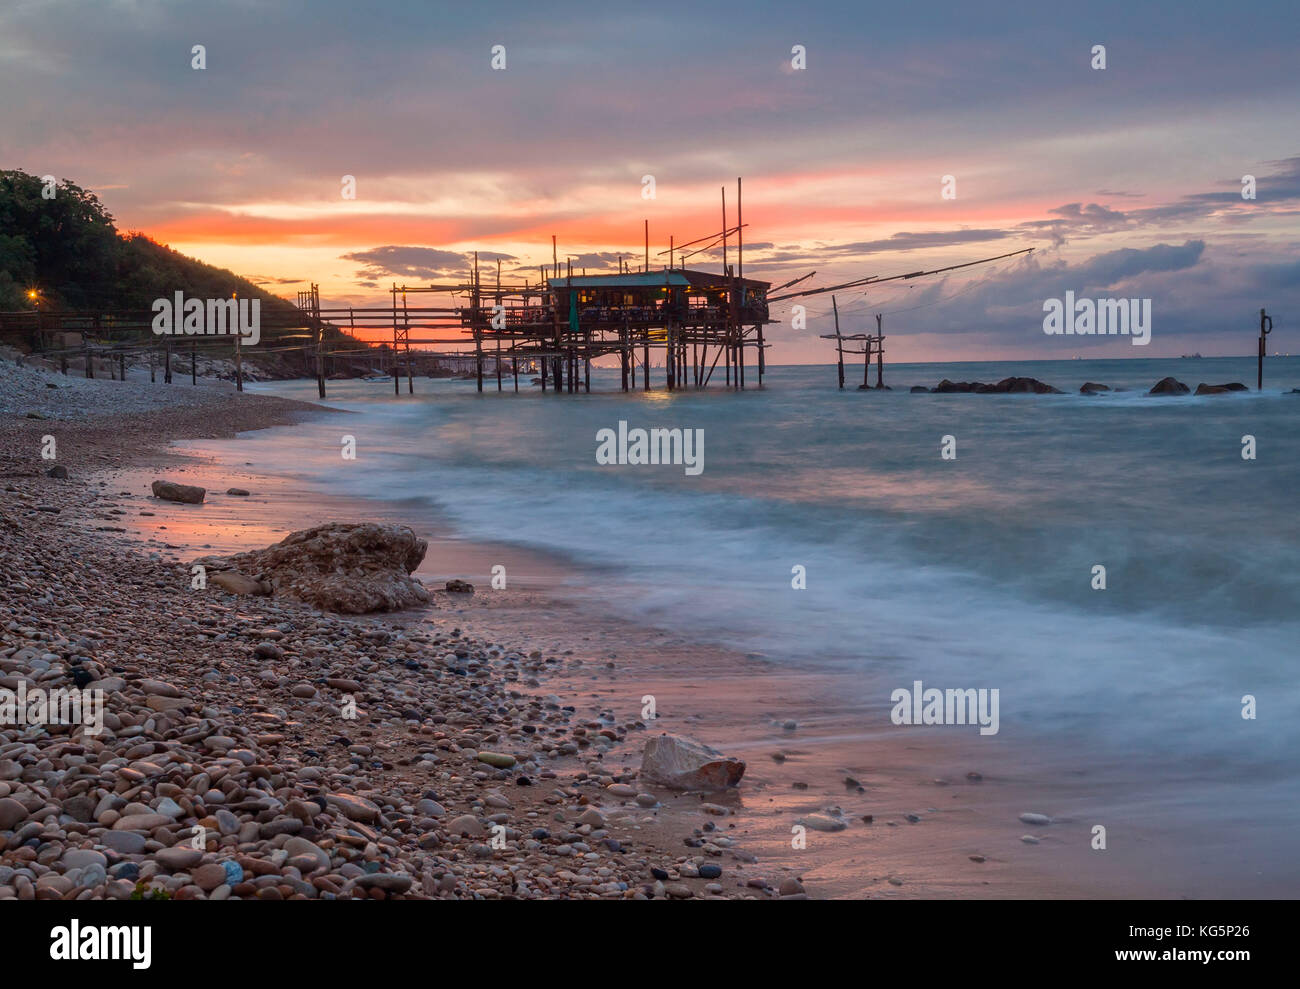 Tramonto sul mare adriatico in costa trabocchi san vito chietino, distretto di Chieti ortona Abruzzo, Italia, Europa Foto Stock